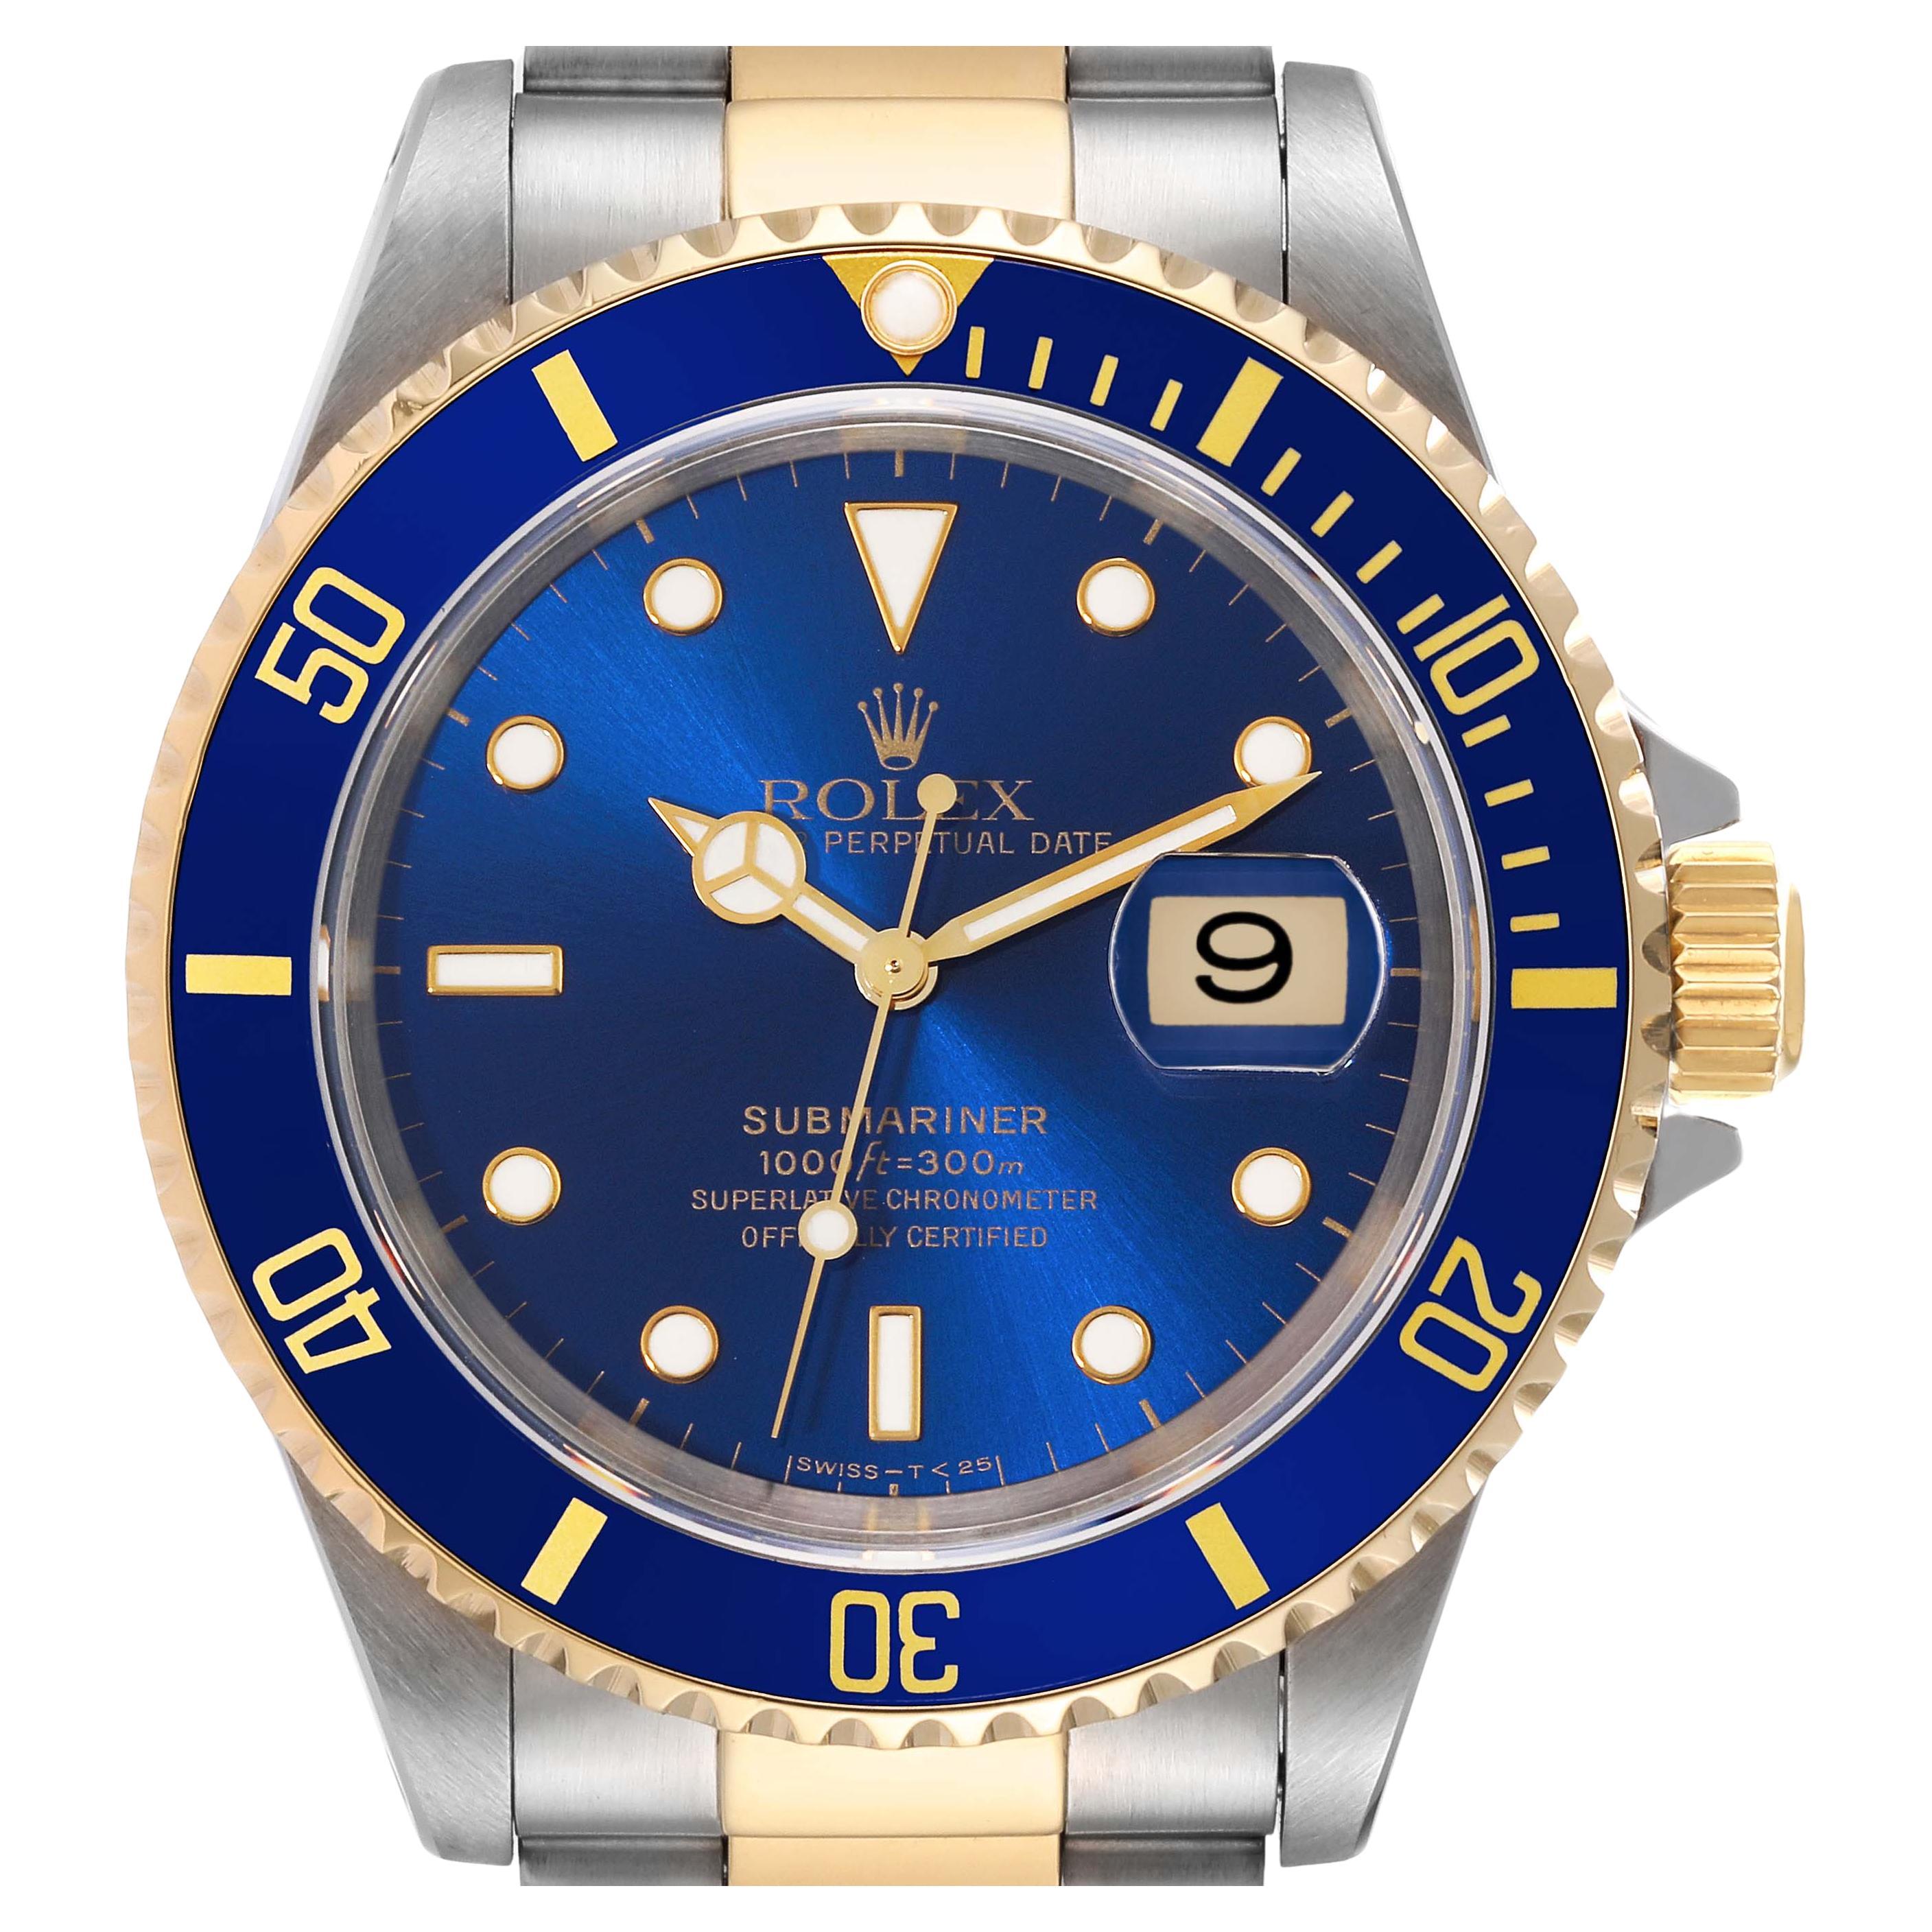 Montre Rolex Submariner à cadran bleu, acier, or jaune, pour hommes, 16613, boîte et documents.